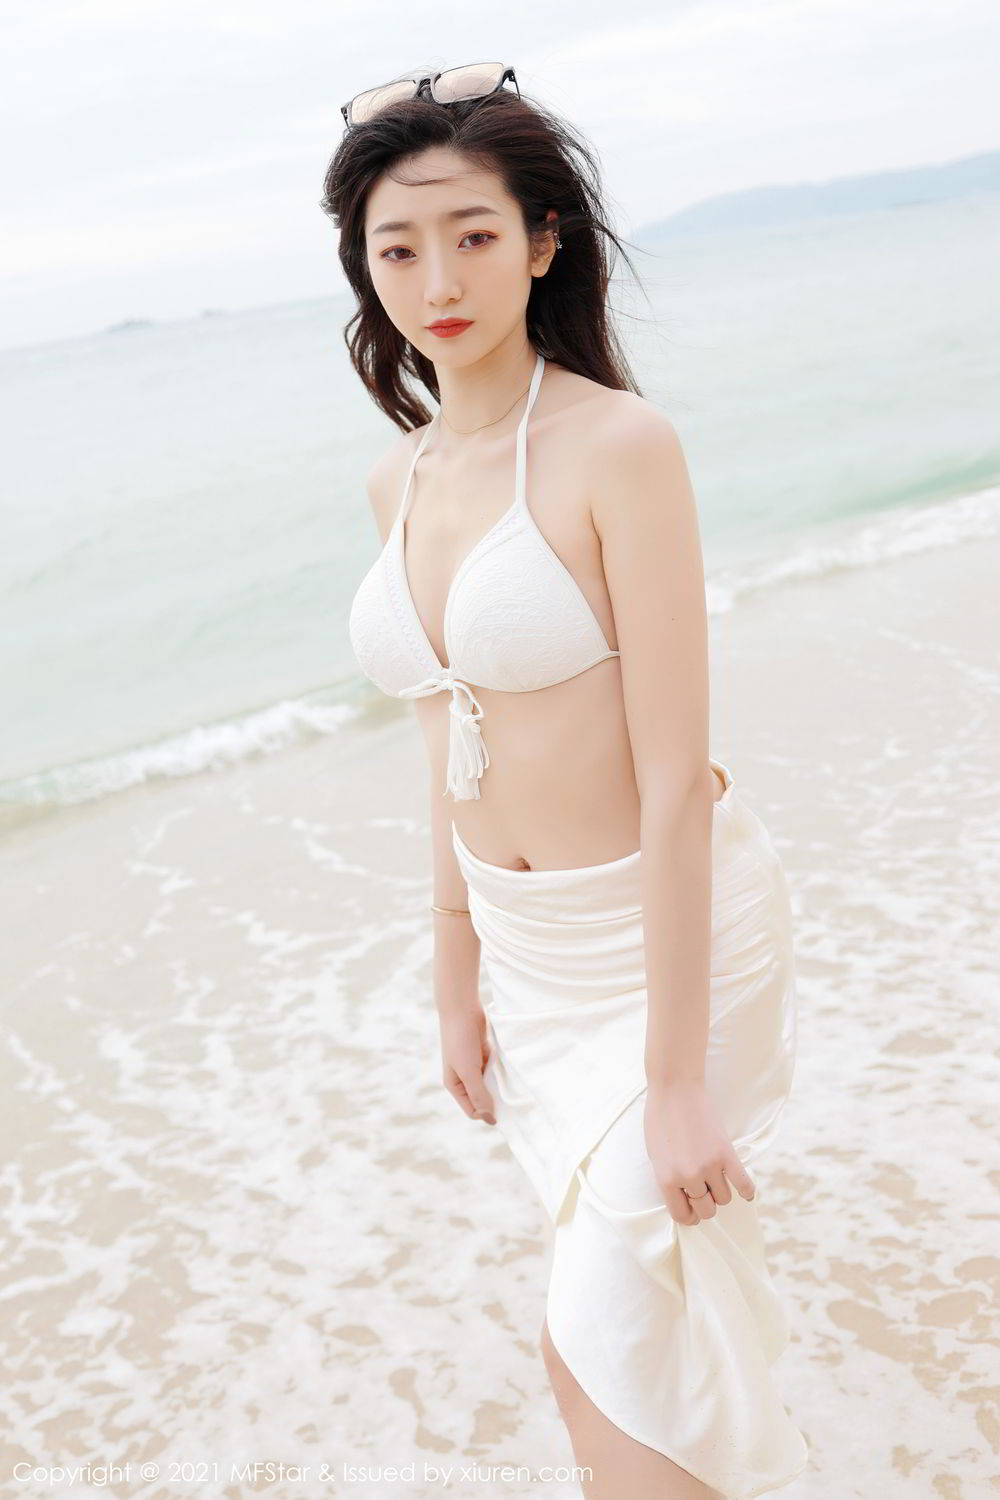 海边沙滩比基尼白裙美女安琪Yee性感旅拍写真显完美迷人身材图片